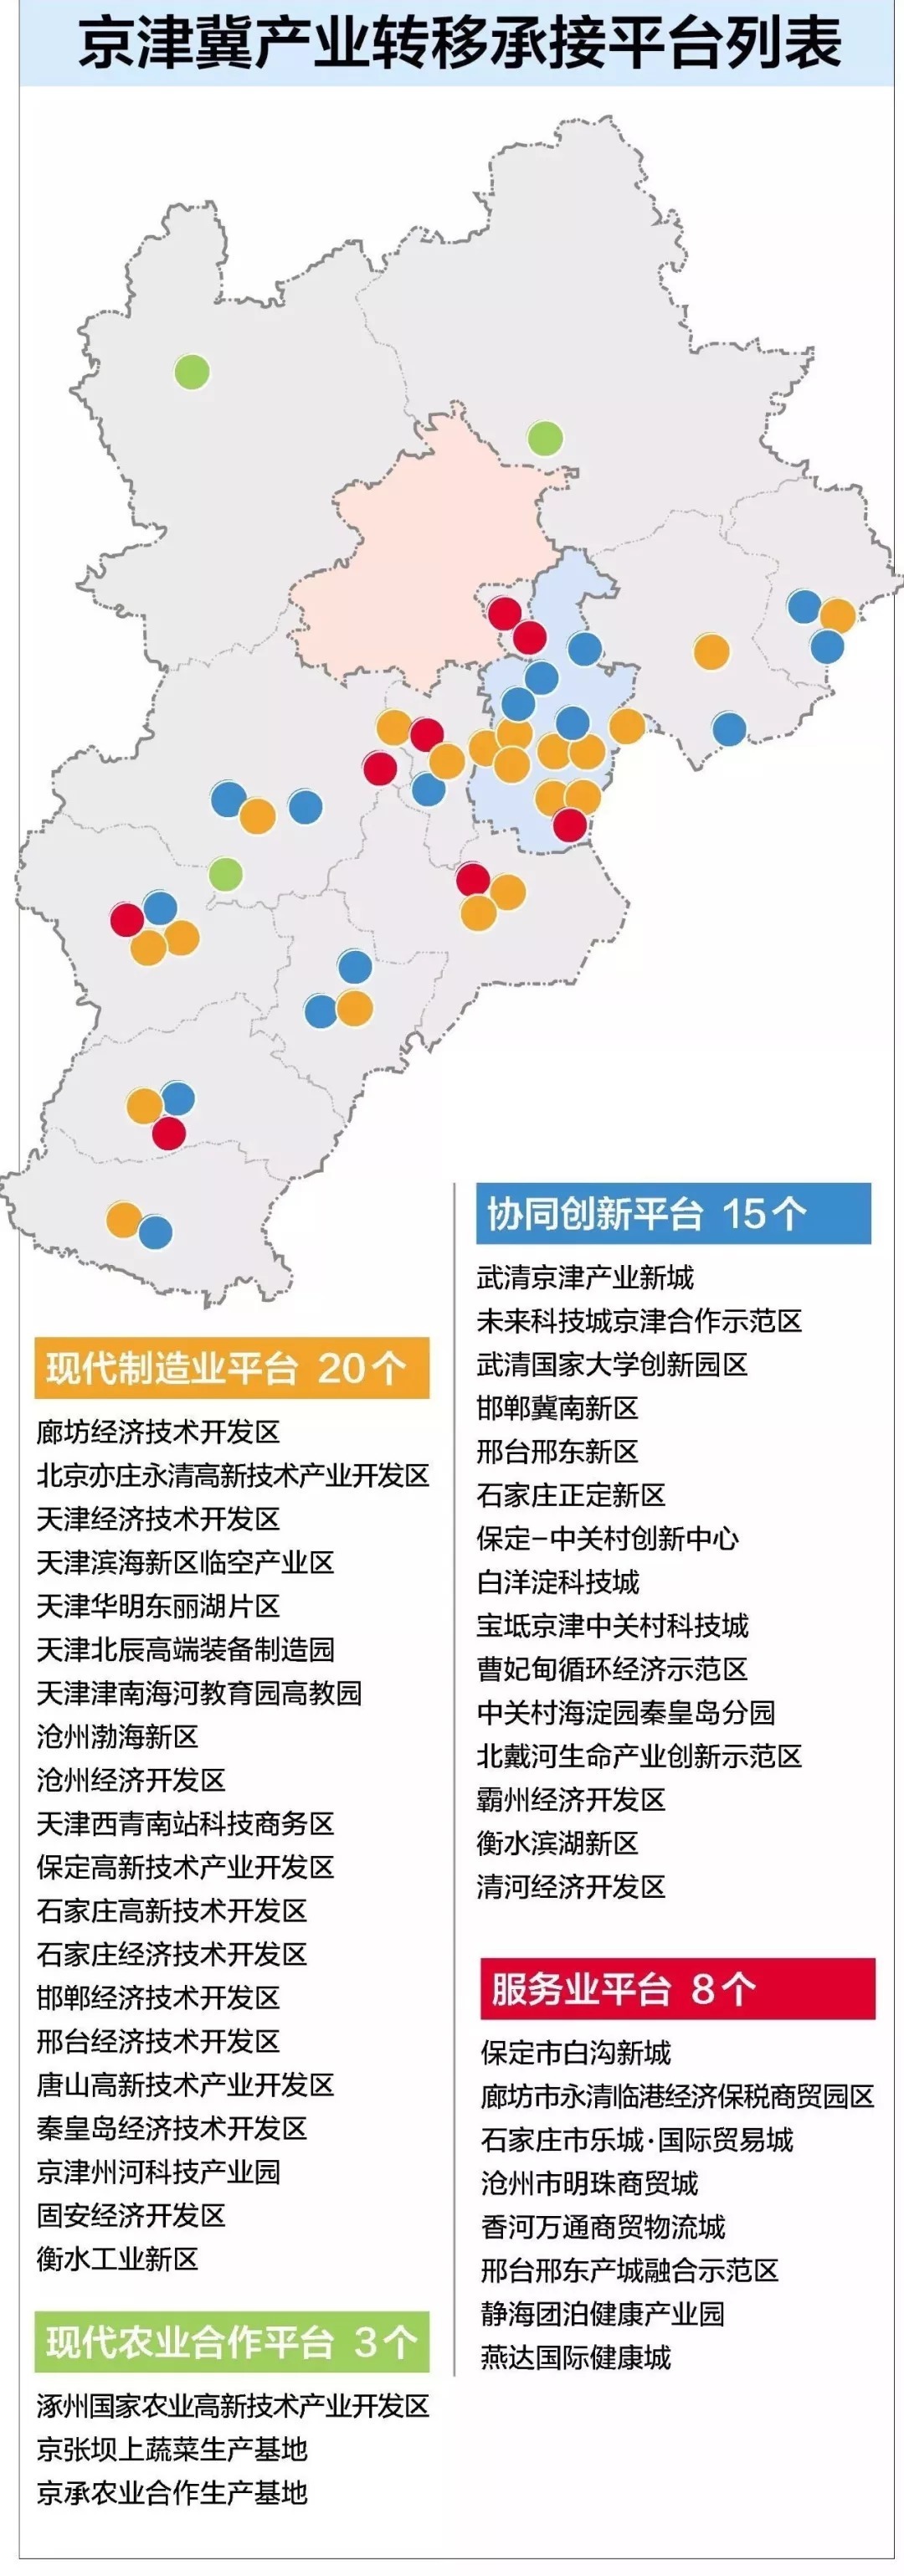 天津滨海新区,也是《京津冀协同发展规划纲要》中明确的4 n功能承接